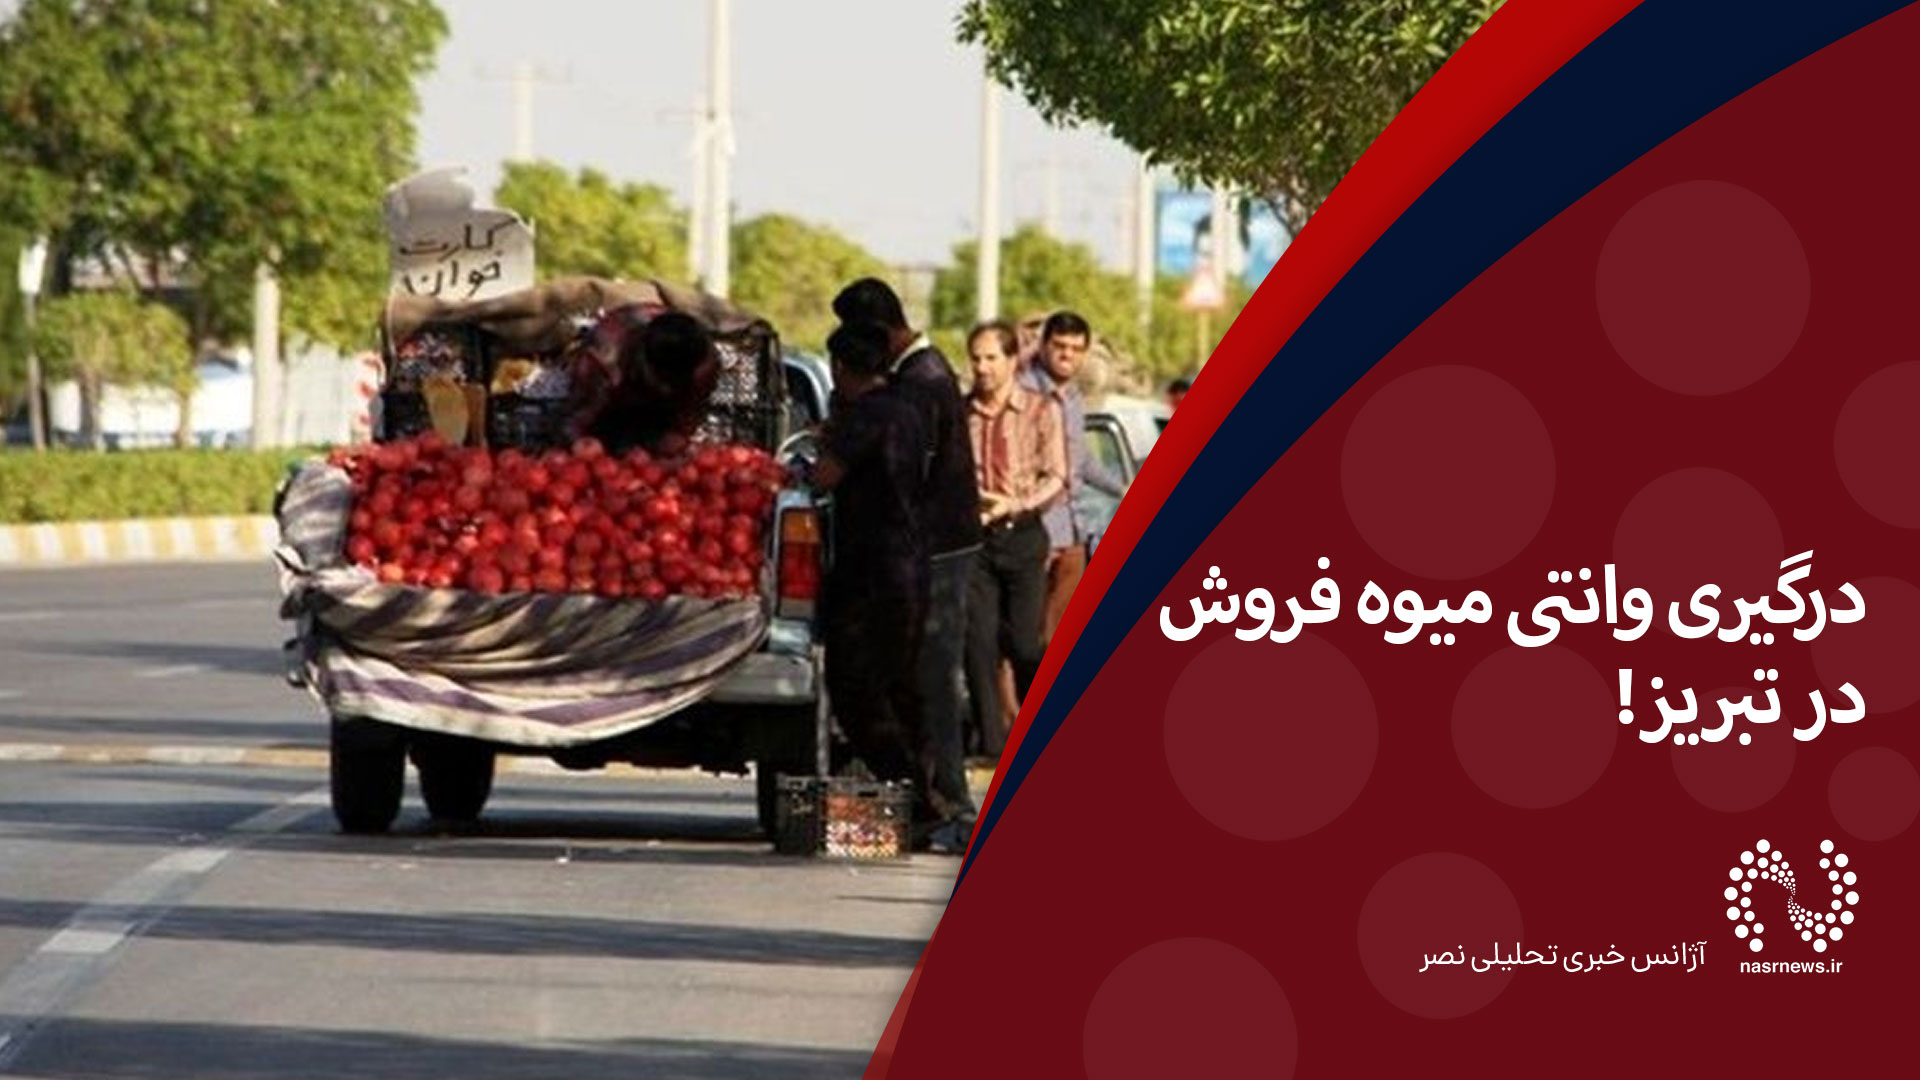 فیلم | درگیری وانتی میوه فروش در تبریز!